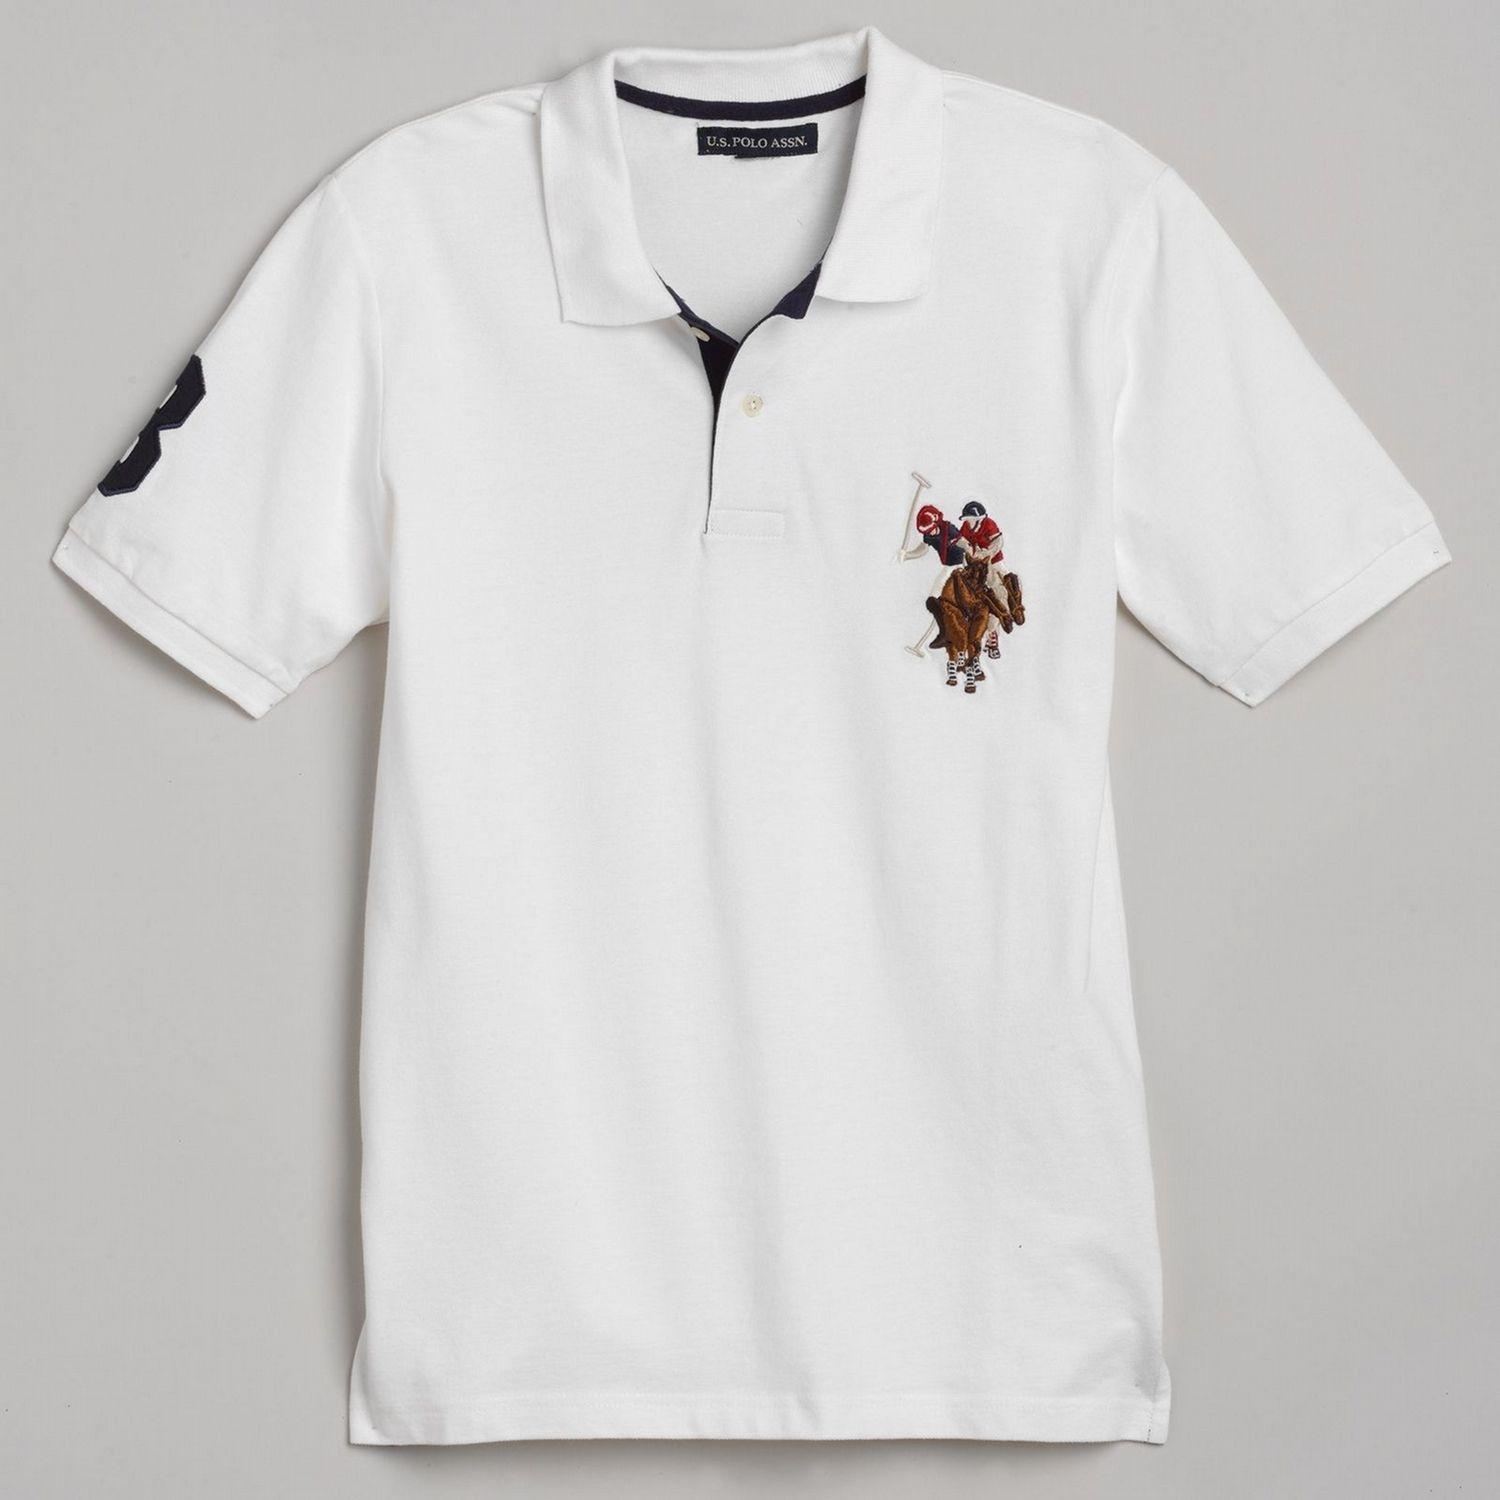 Multi Color U Logo - US Polo Assn. Men's Pique Polo Shirt - Multicolor Logo | Shop Your ...